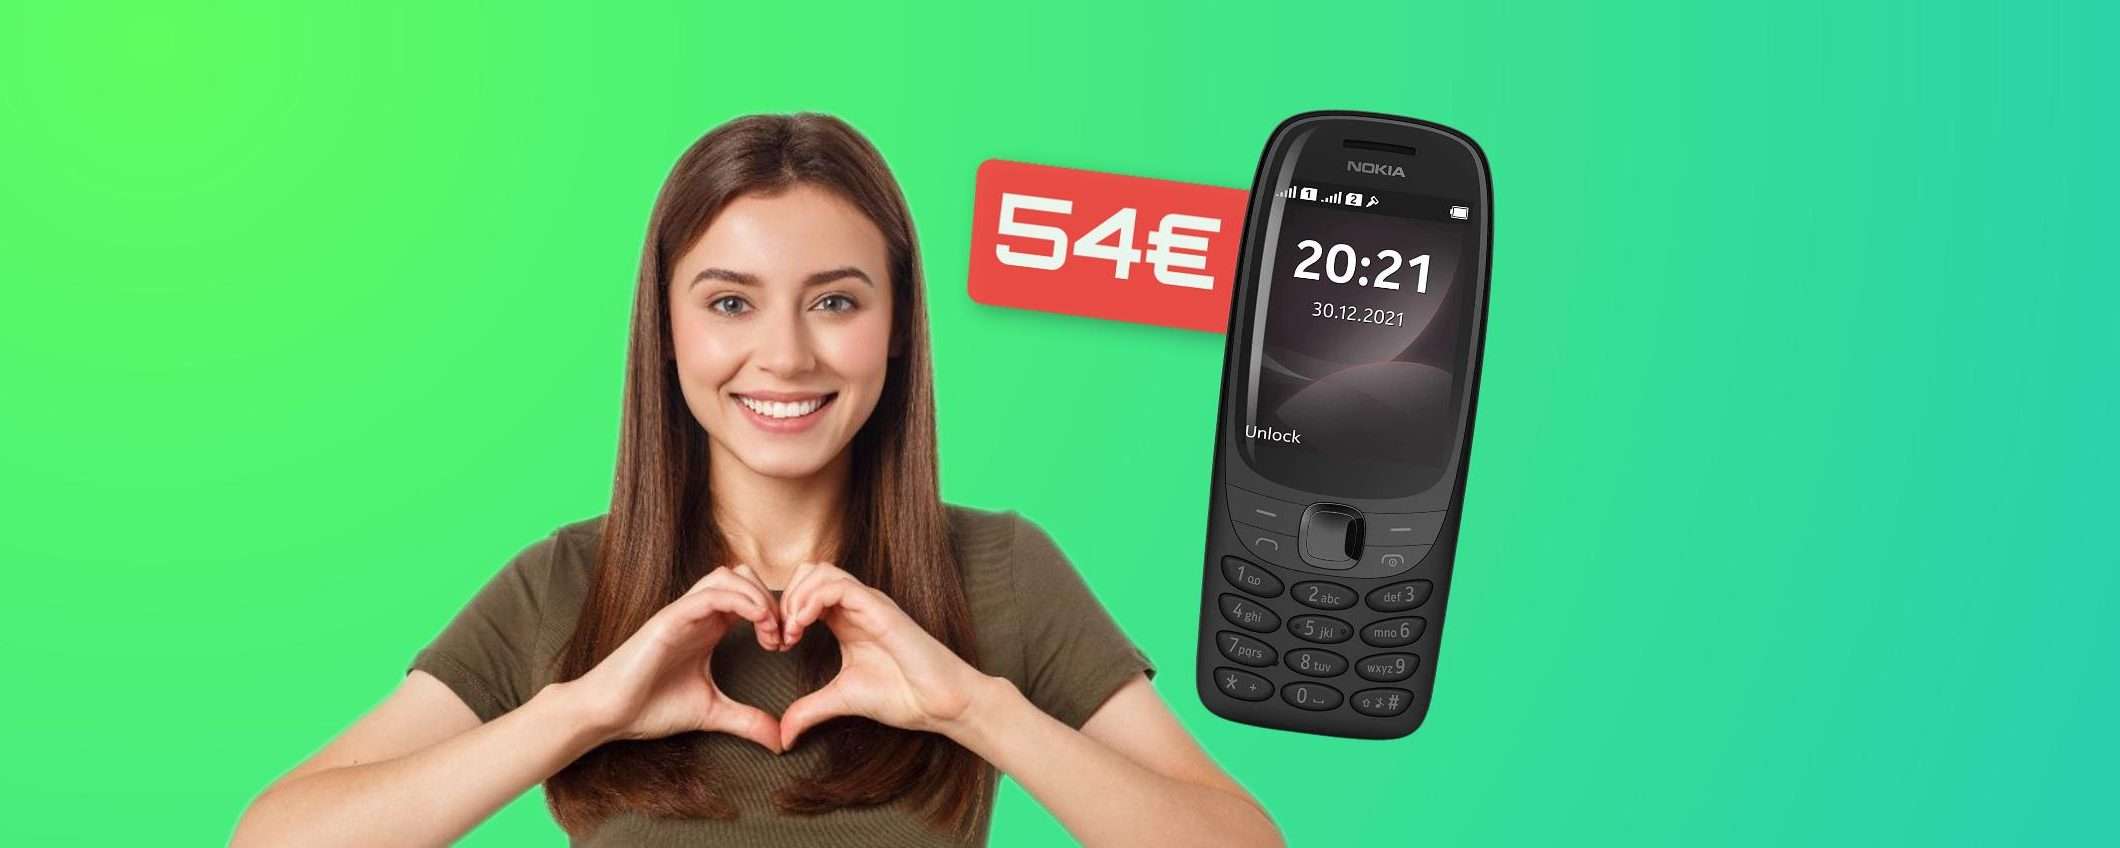 Nokia 6310, il cellulare più amato di sempre è già tuo con appena 54€